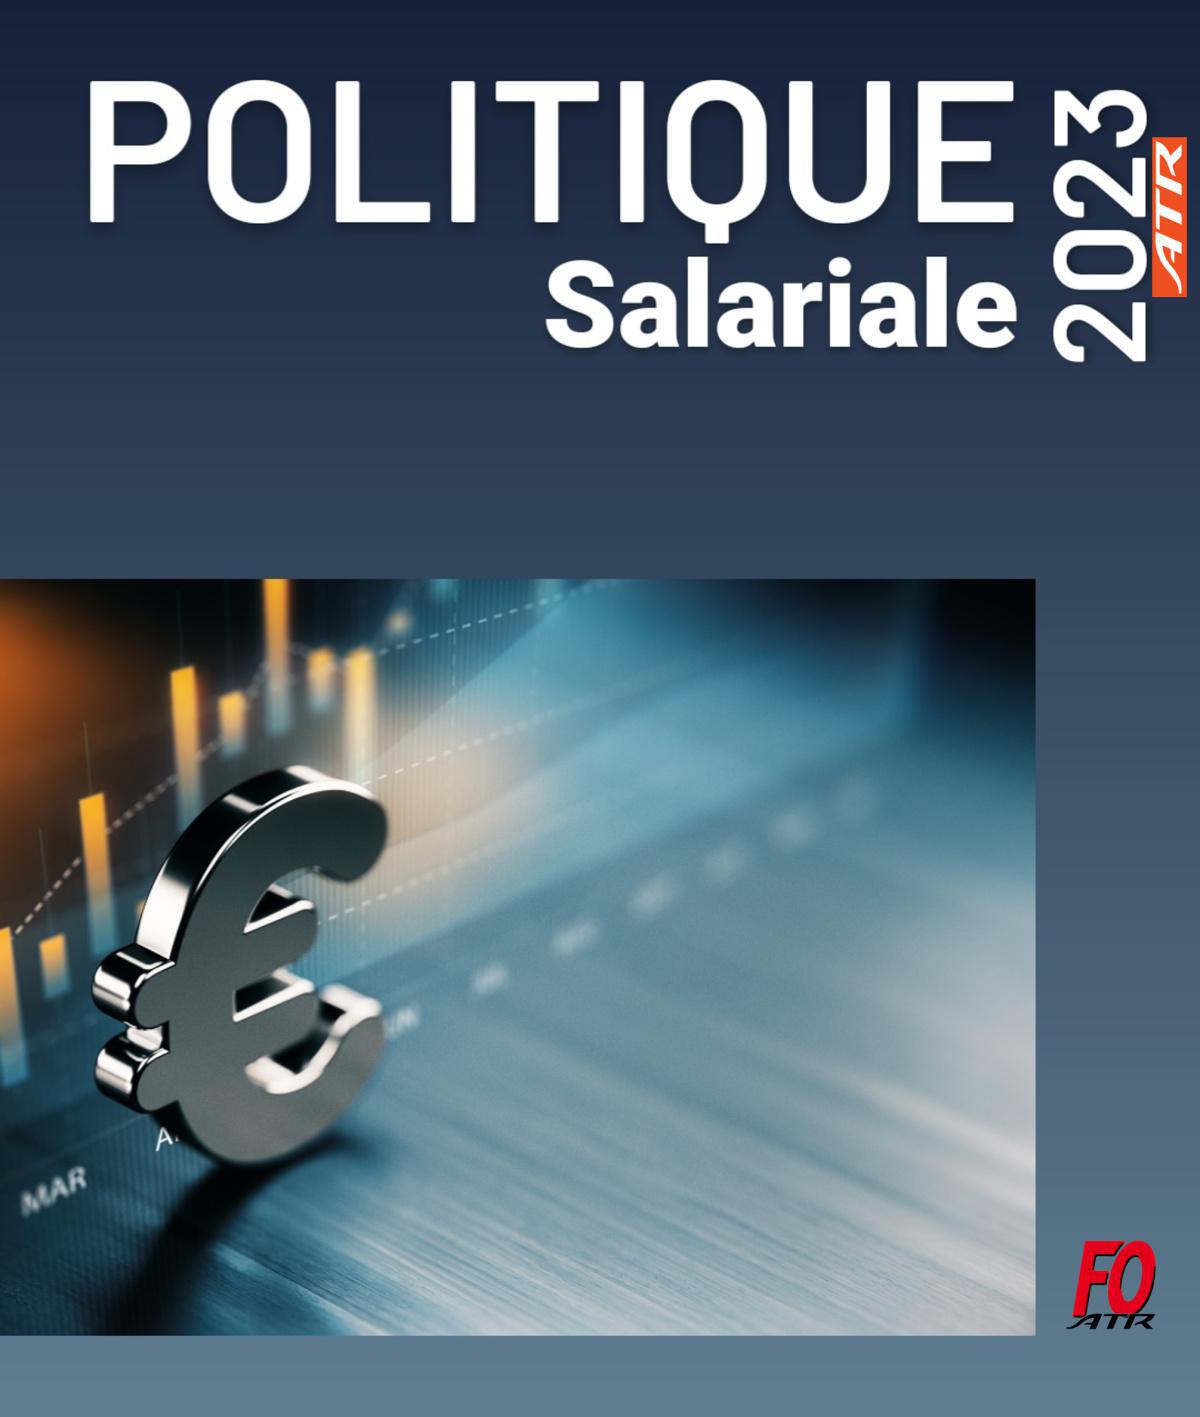 Politique Salariale 2023 : Ouverture de la négociation